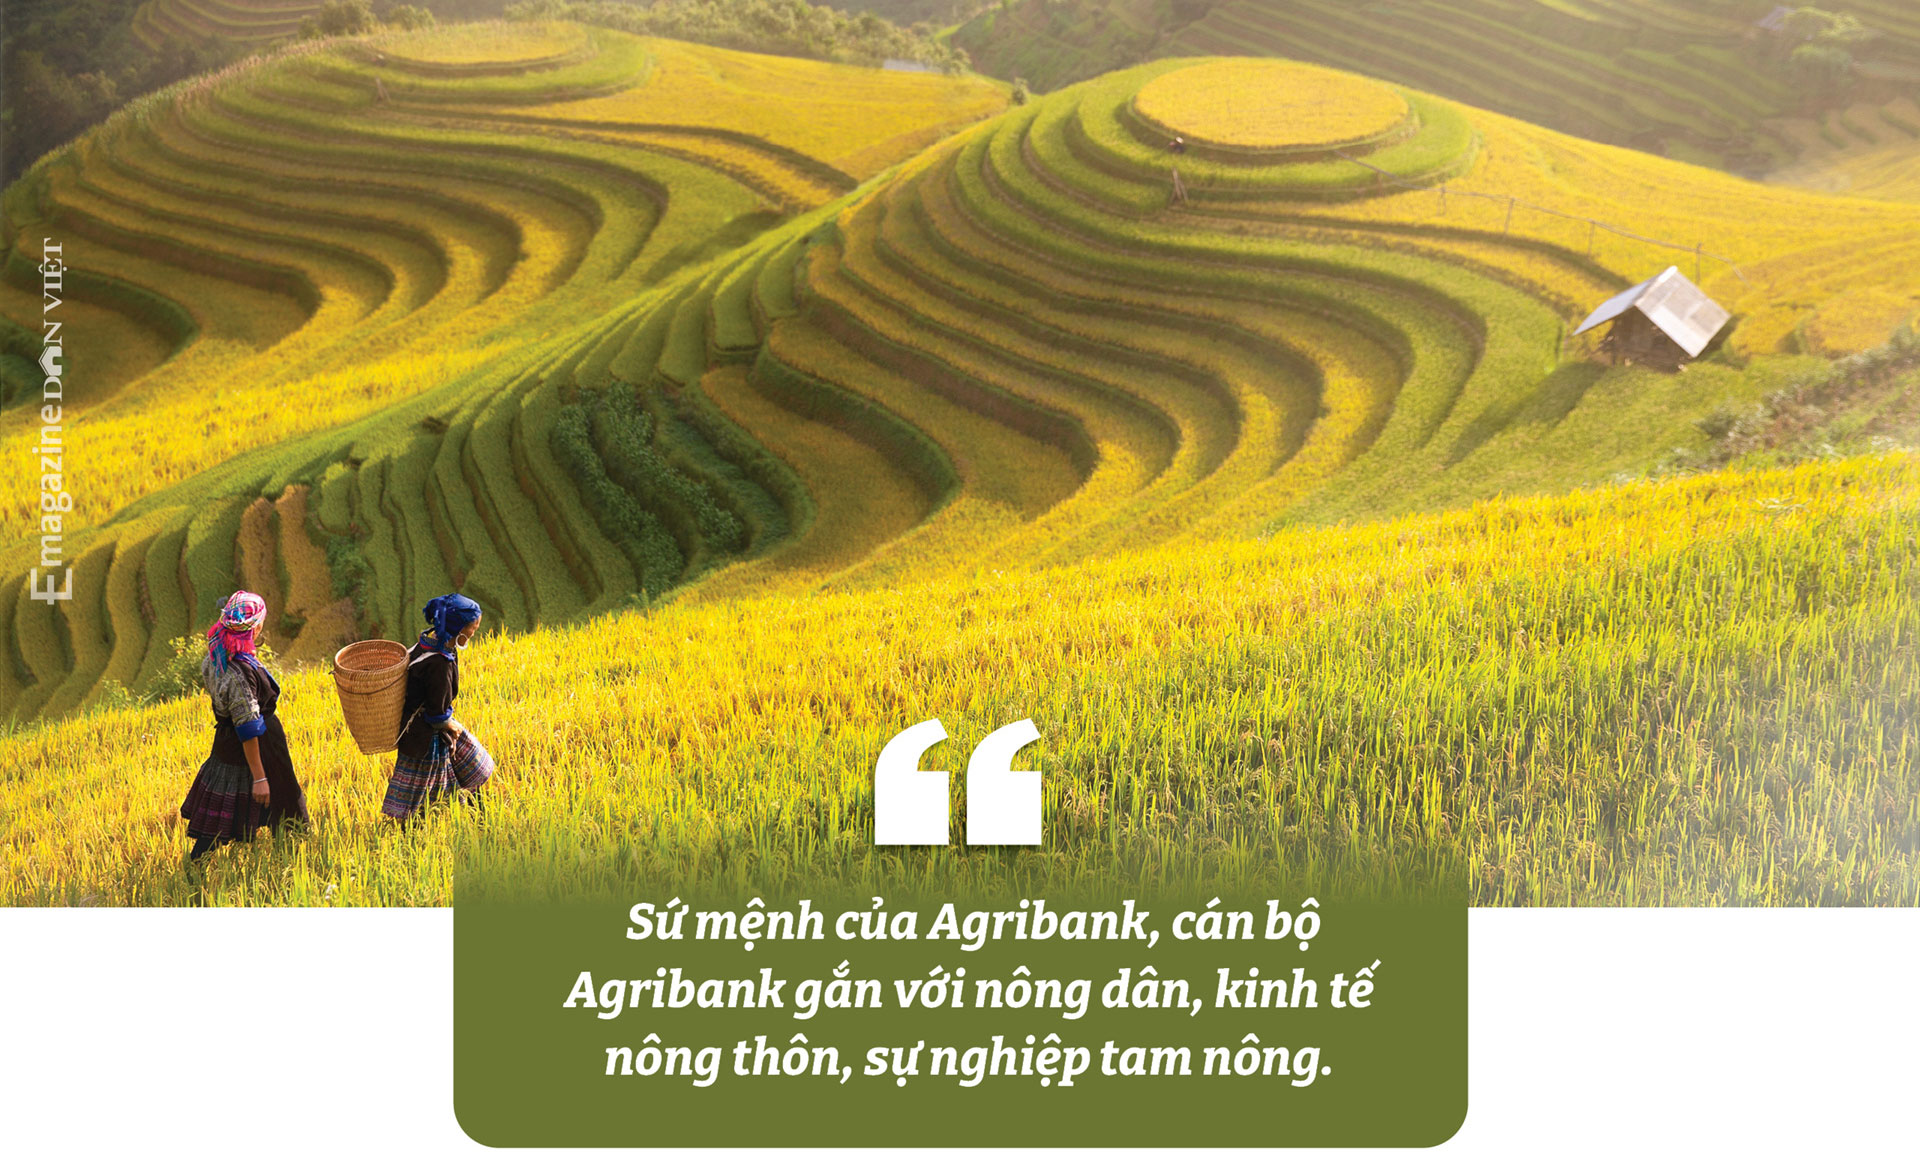 Bà Nguyễn Thị Phượng, Phó Tổng Giám đốc Agribank: “Chúng tôi sinh ra để phục vụ nông dân” - Ảnh 9.